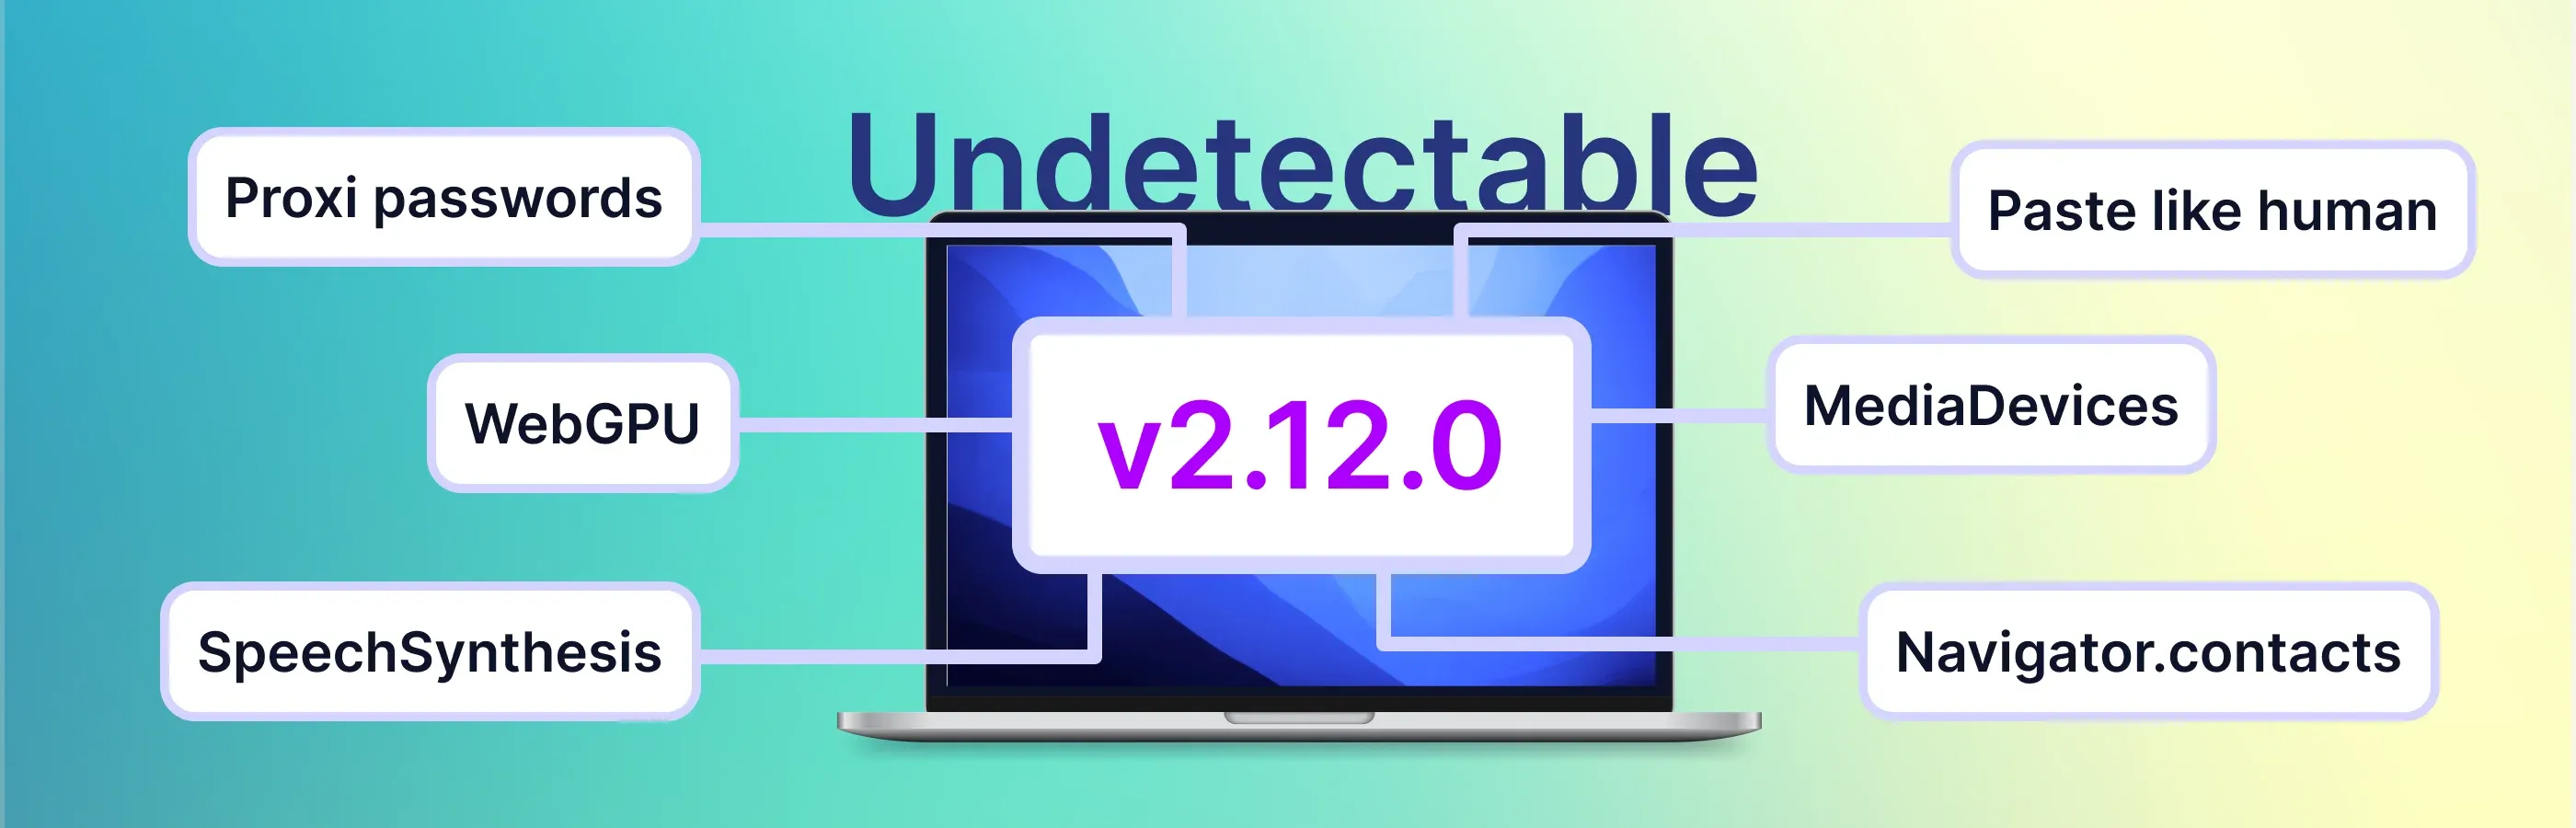 Atualização do navegador Undetectable 2.12: melhorias de impressões digitais e conveniência